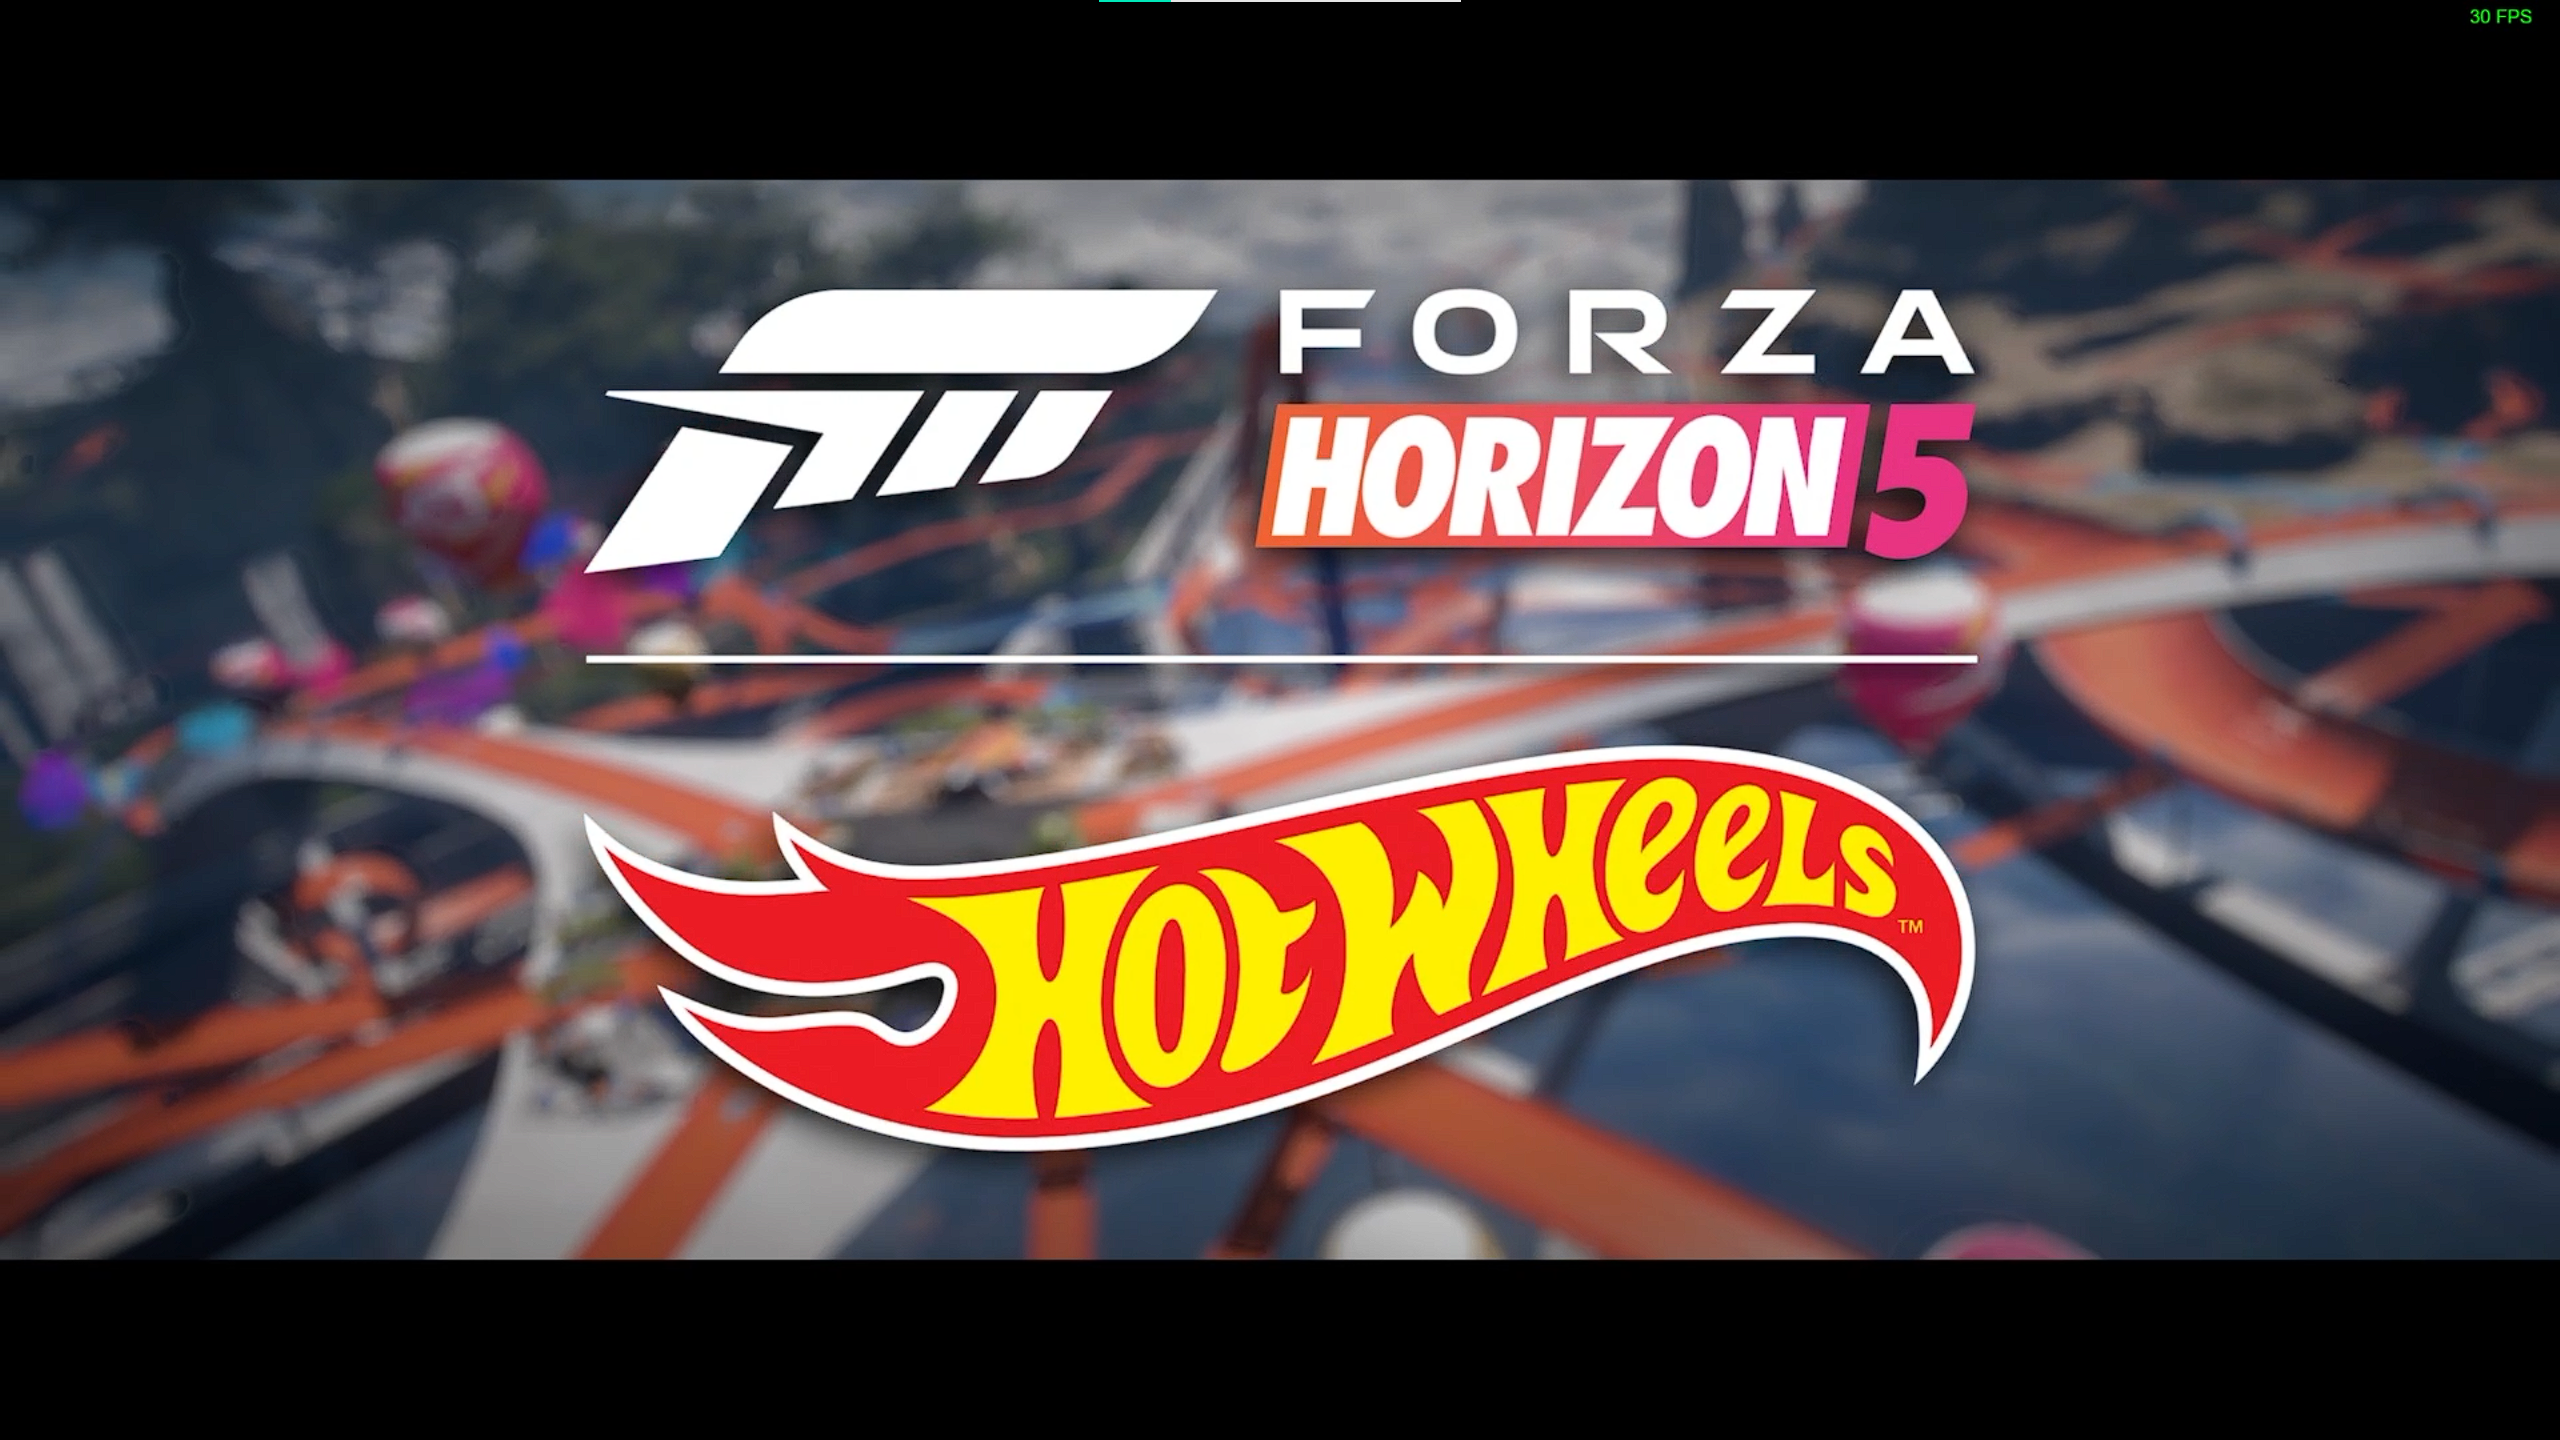 Forza Horizon 5 - 2021 Sierra Cars 700R by Javler47 on DeviantArt